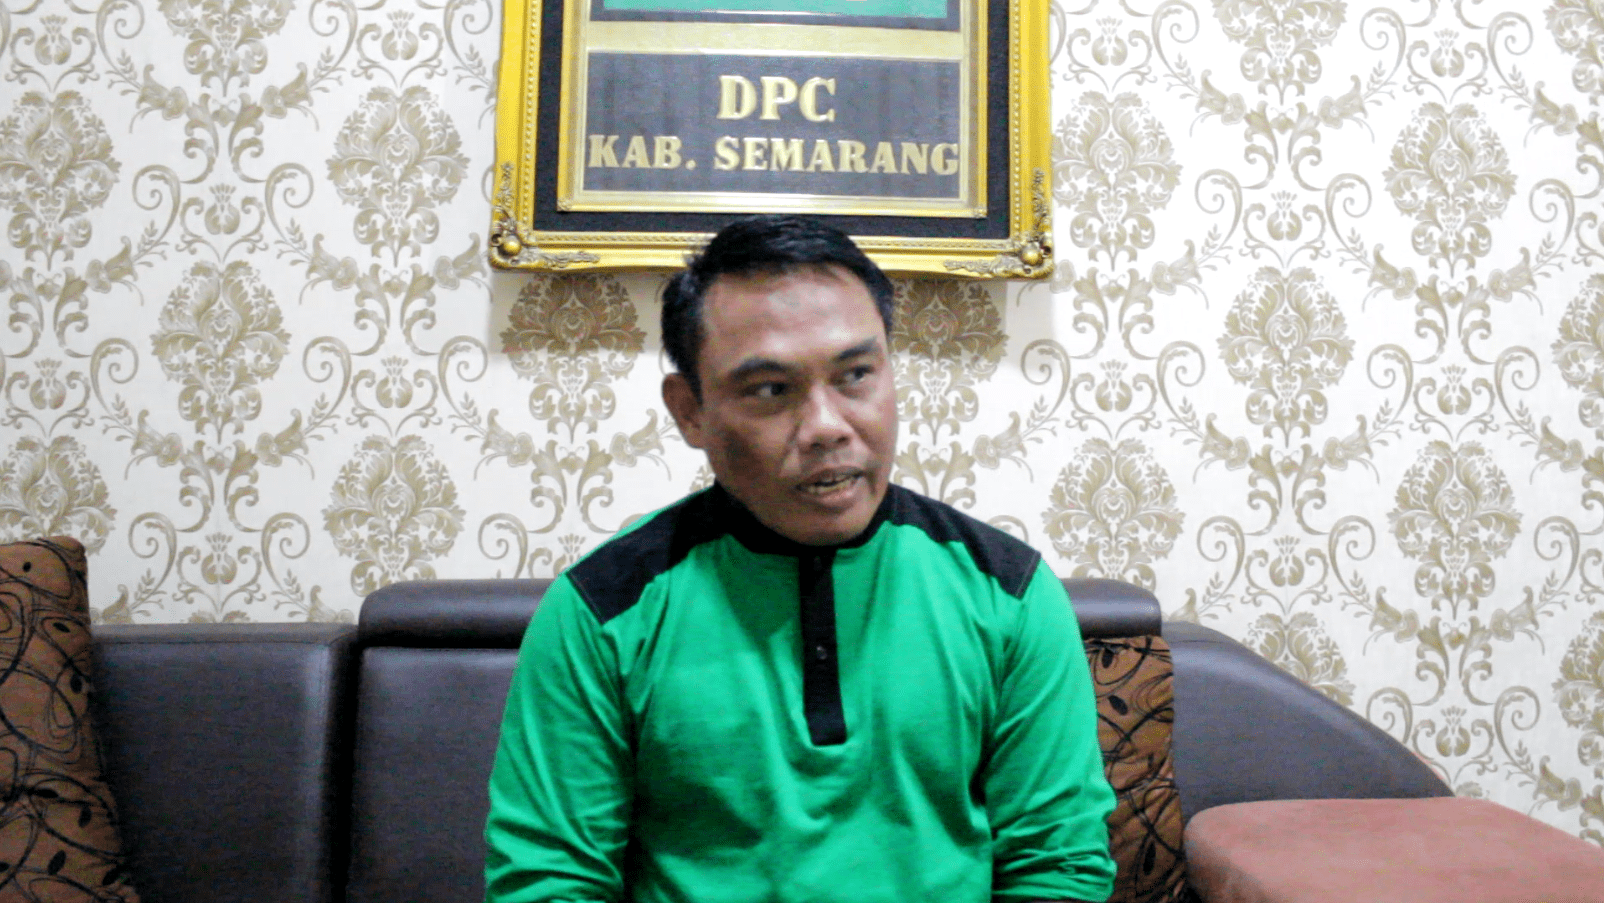 Wakil Ketua DPRD Kabupaten Semarang Nurul Huda saat ditemui Lingkar.co. NURSEHA/LINGKAR.CO